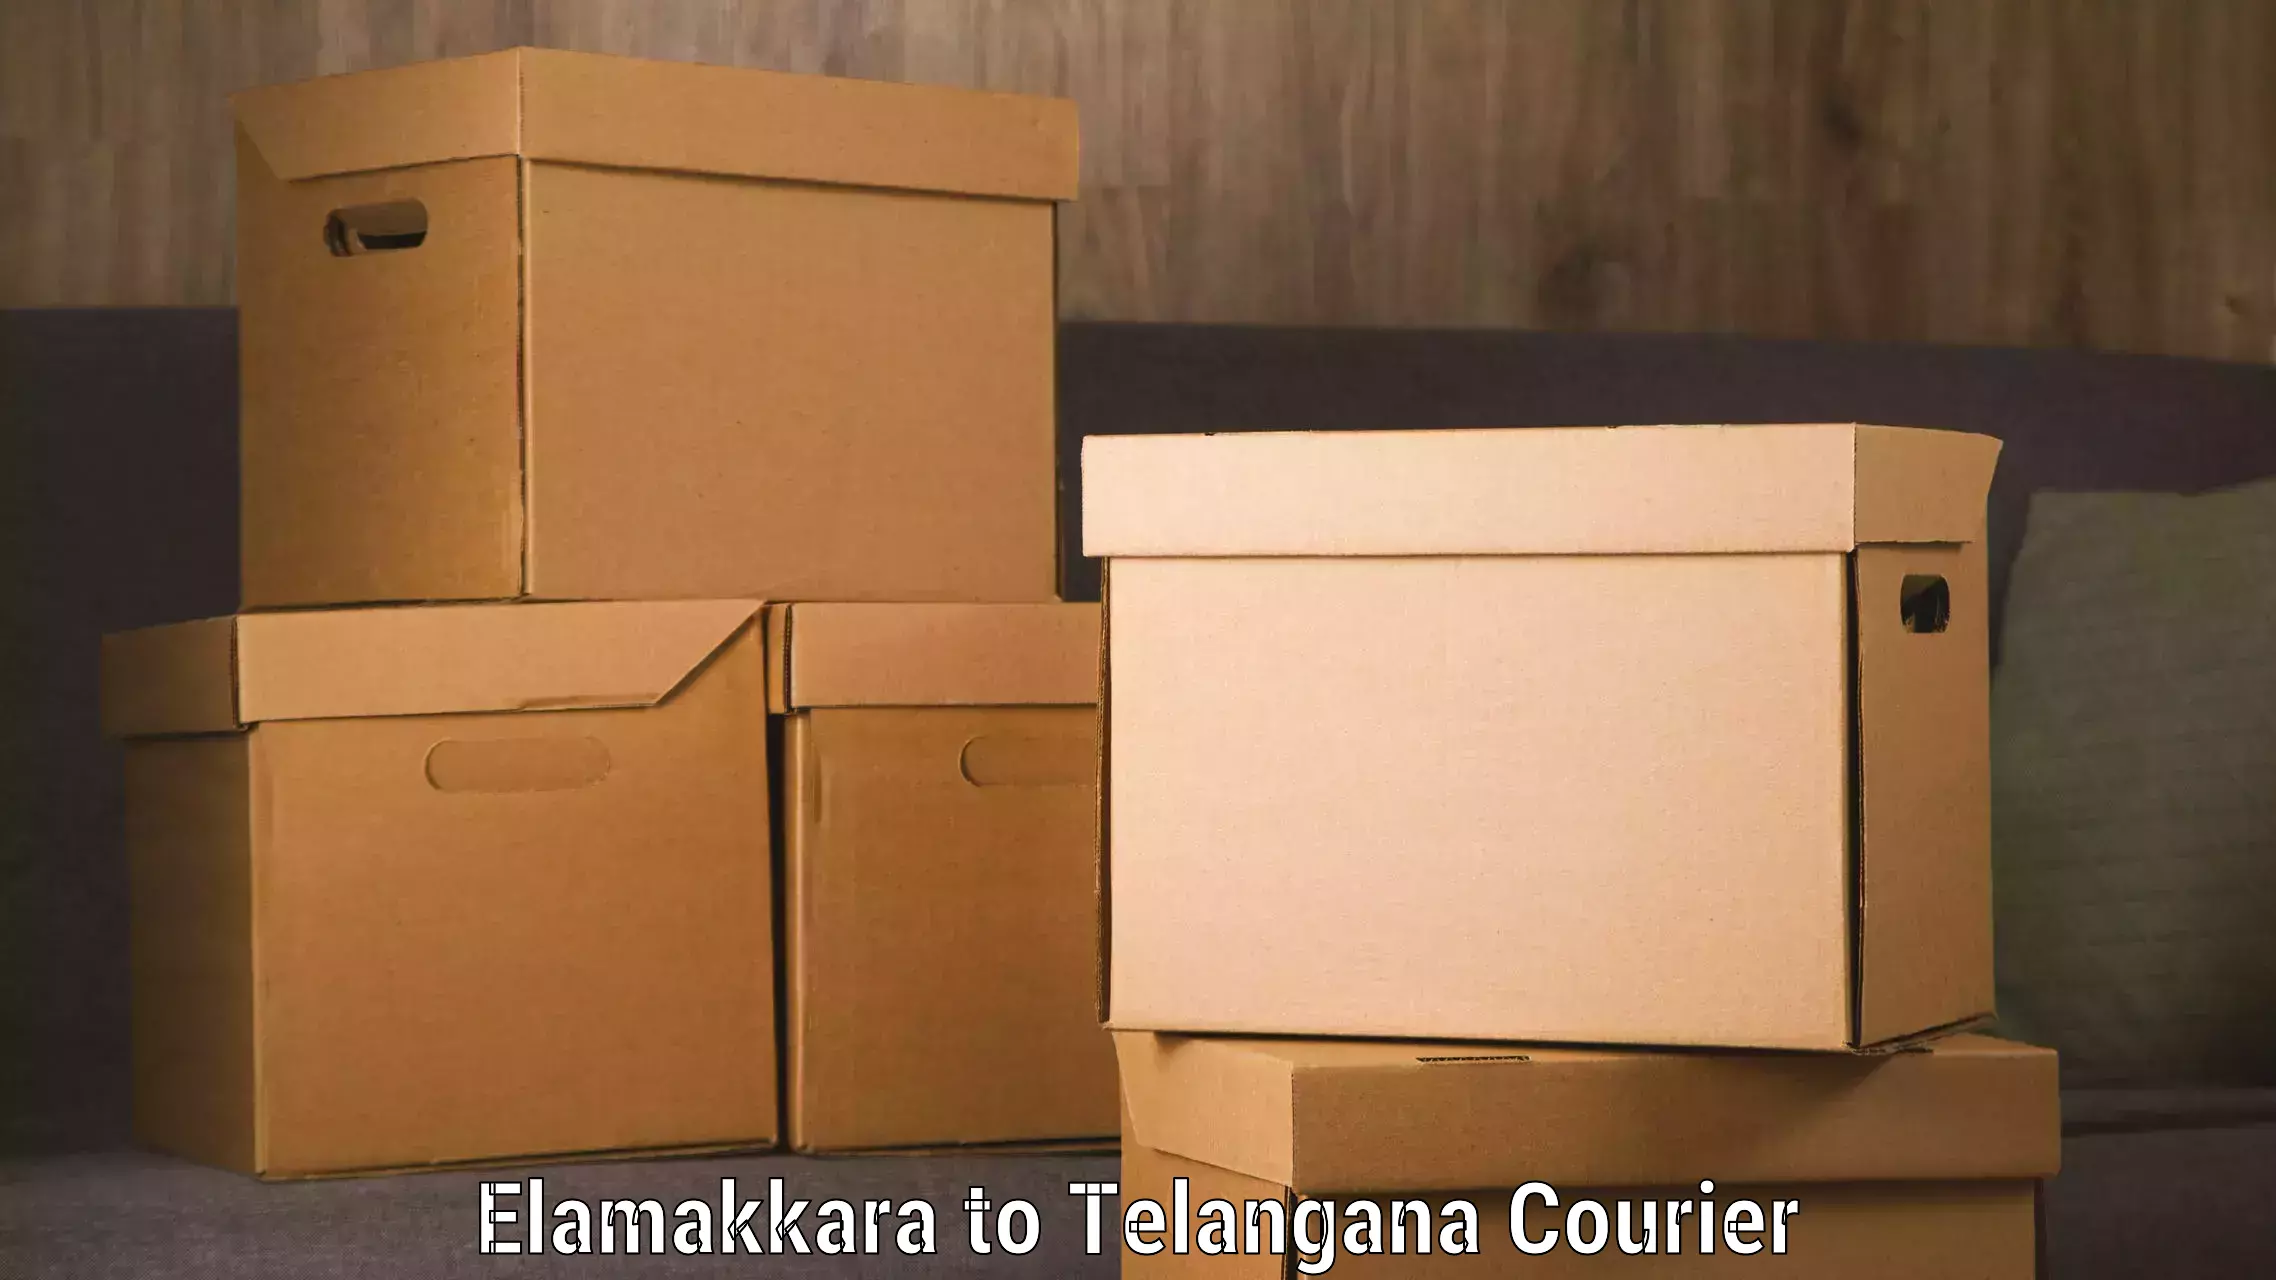 Advanced shipping technology Elamakkara to Yellandu